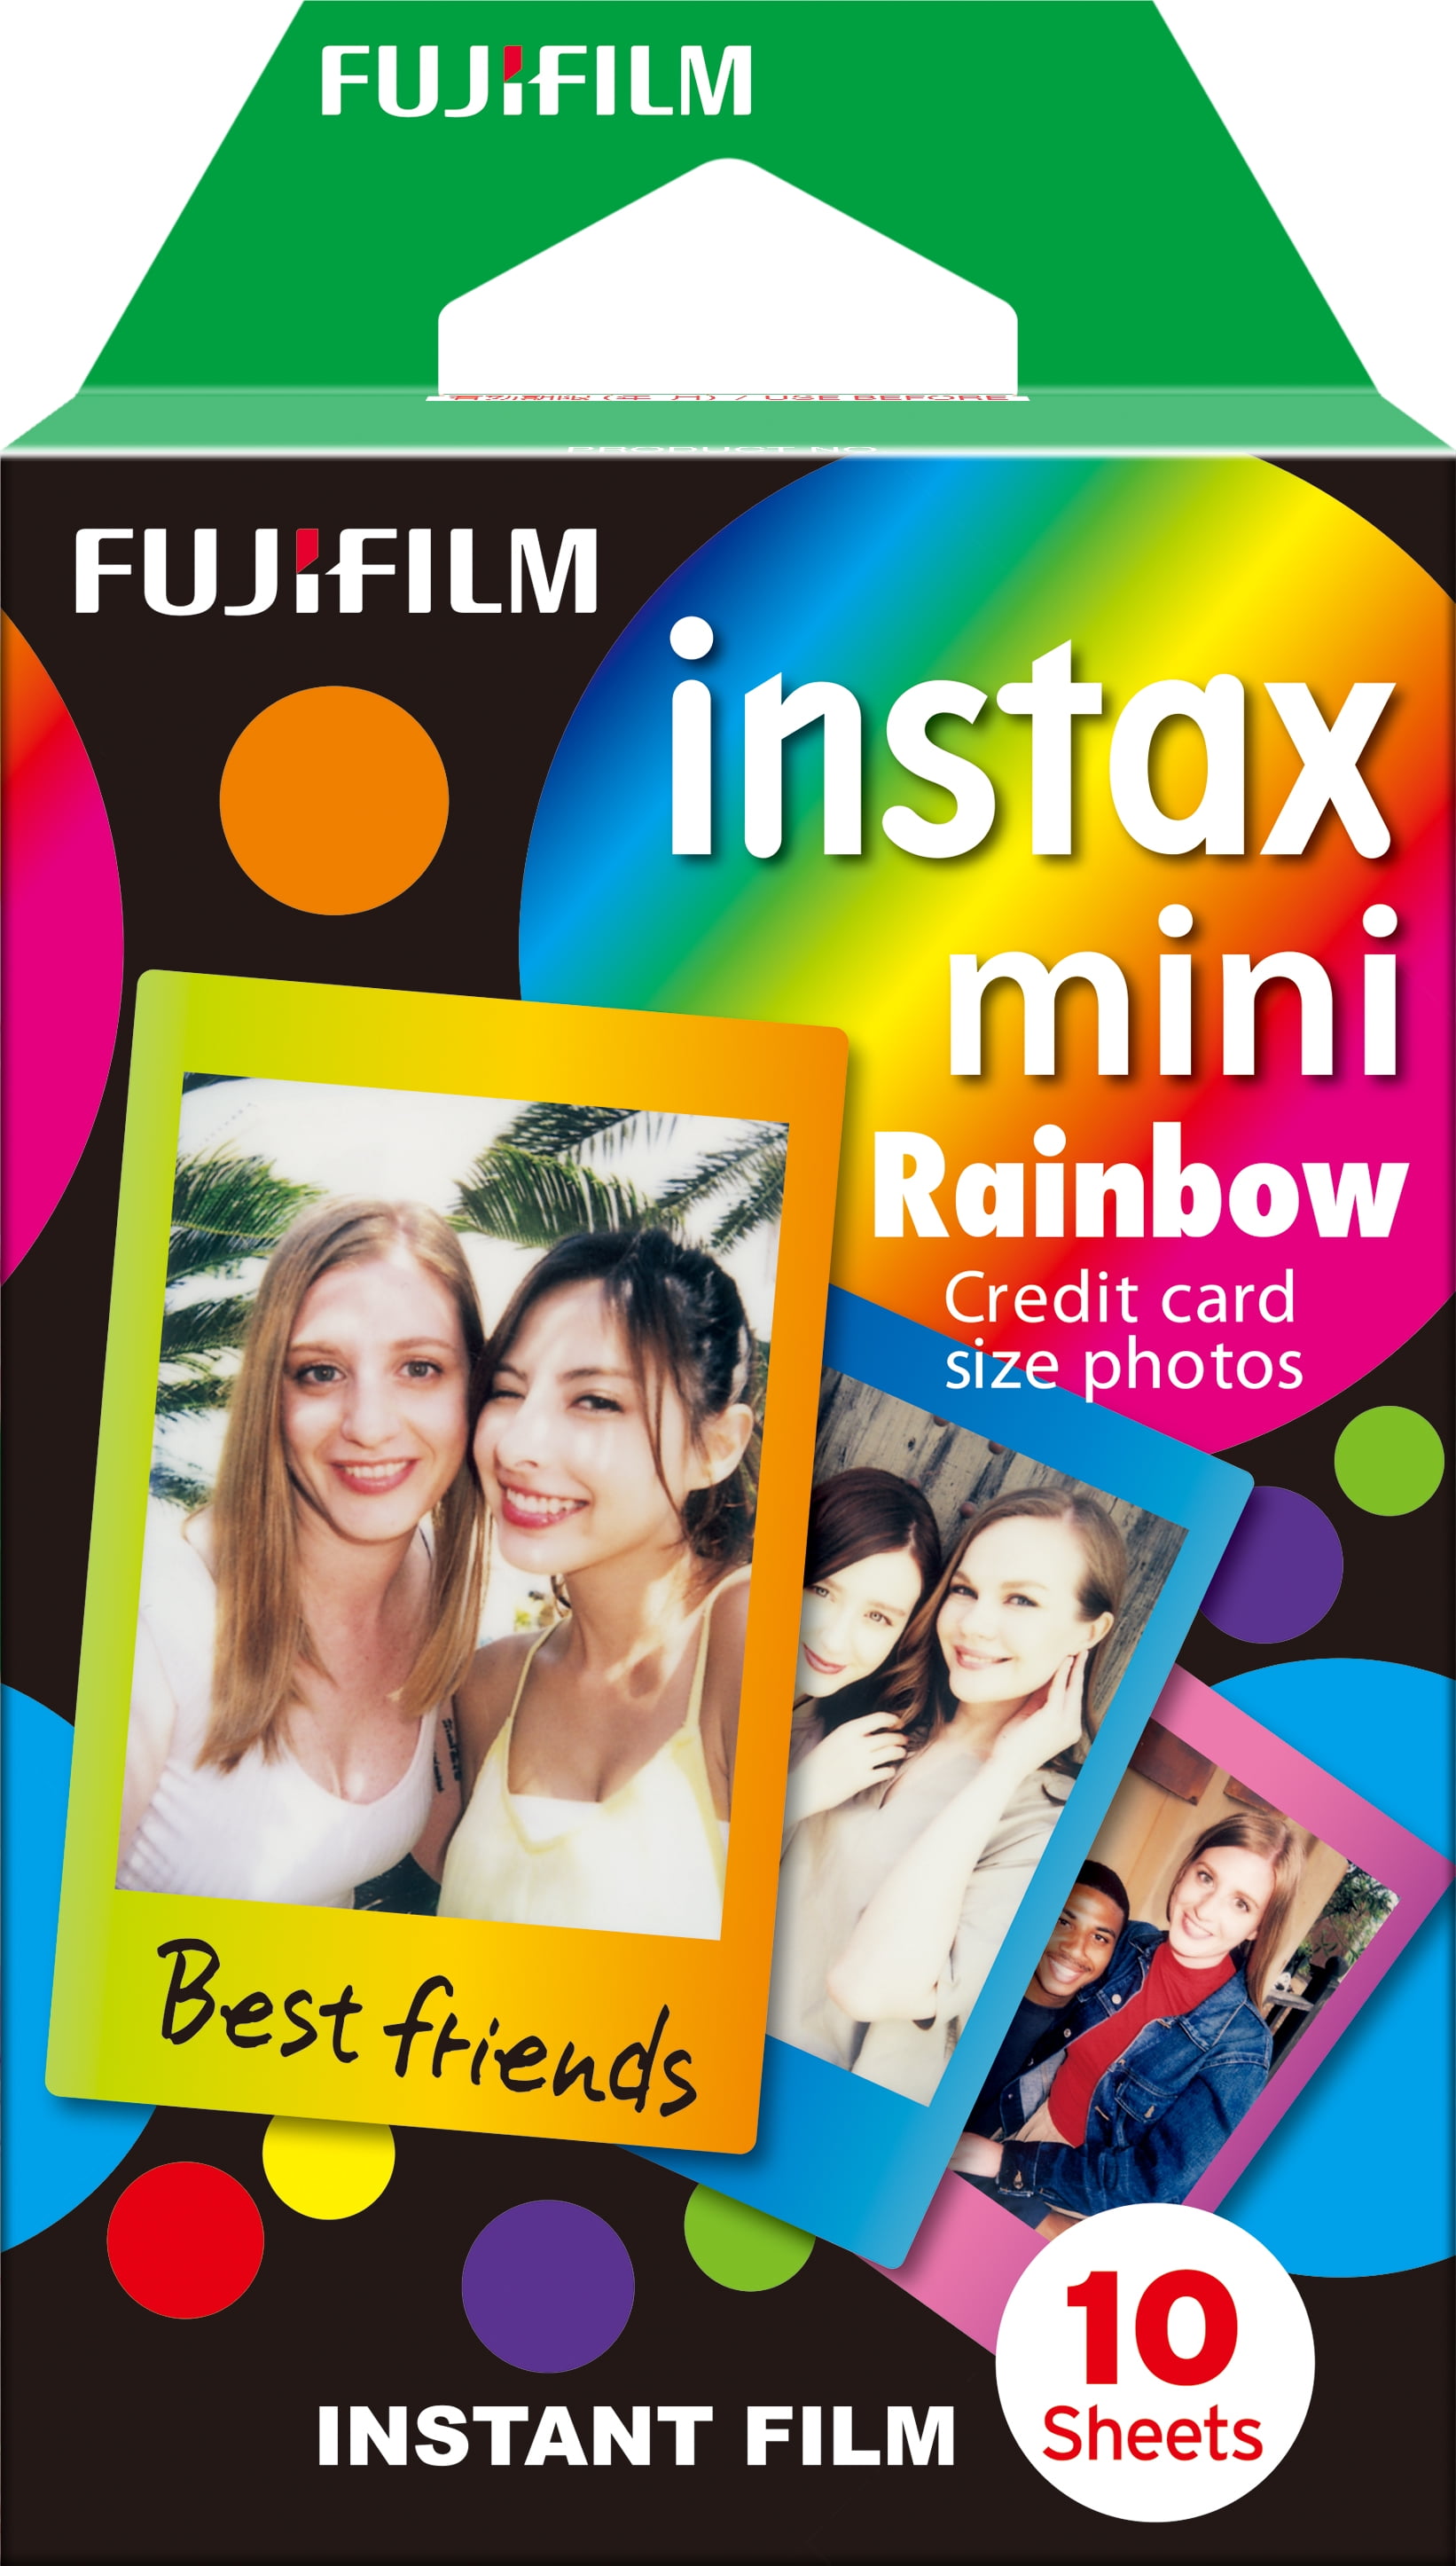 FUJIFILM INSTAX MINI Black Instant Film (10 Exposures) 16537043